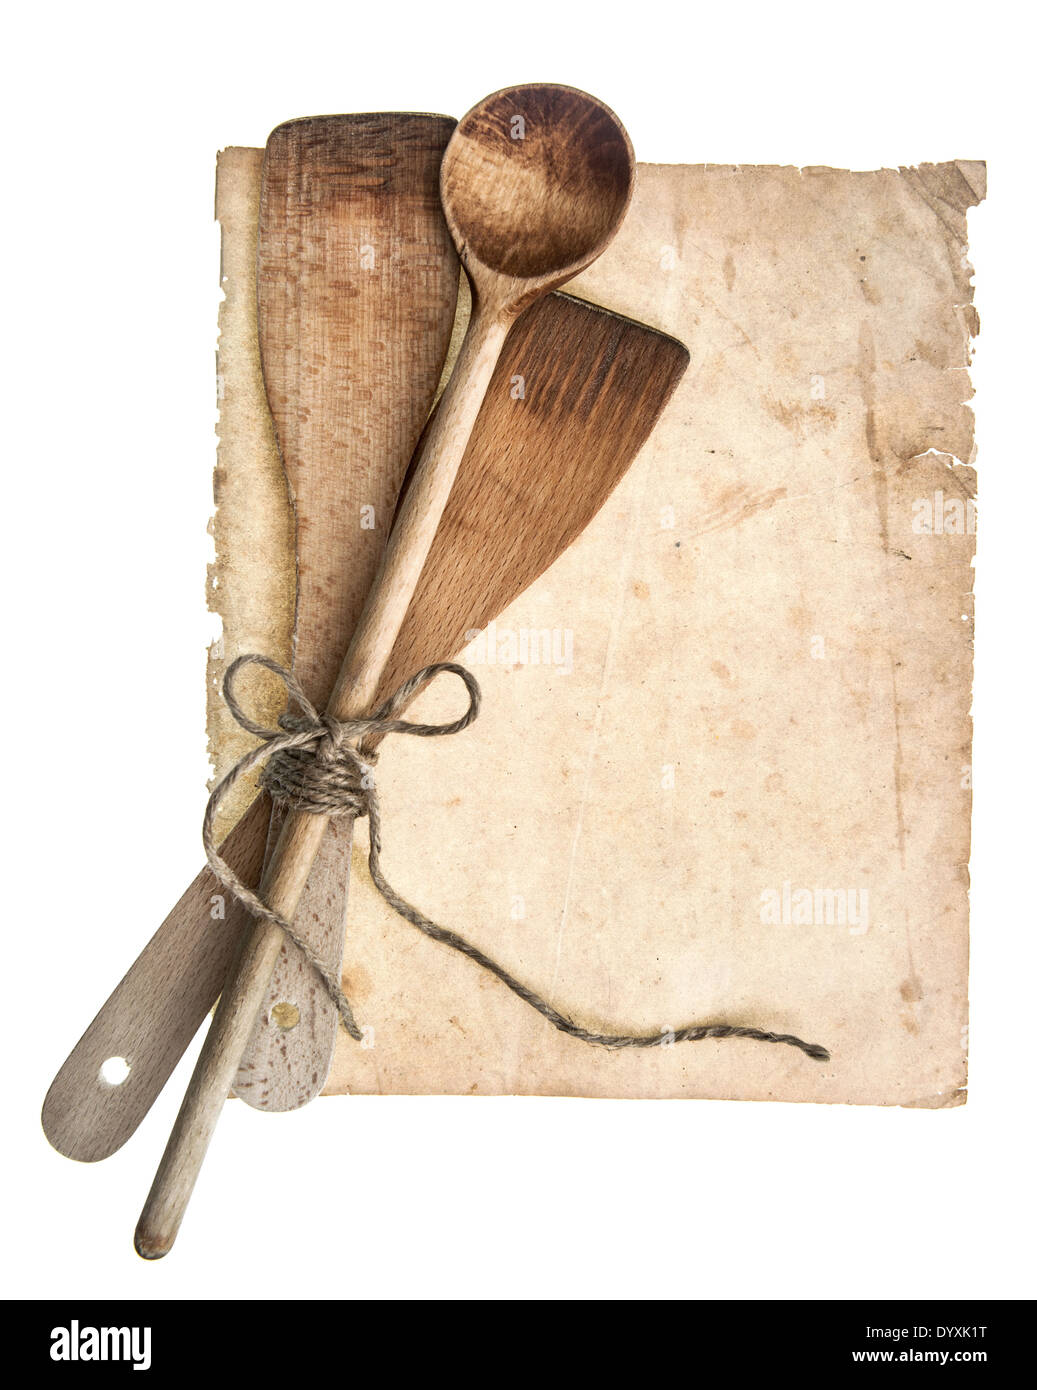 Vintage in legno utensili da cucina e la vecchia pagina cookbook isolati su sfondo bianco. La nonna ricette del concetto Foto Stock